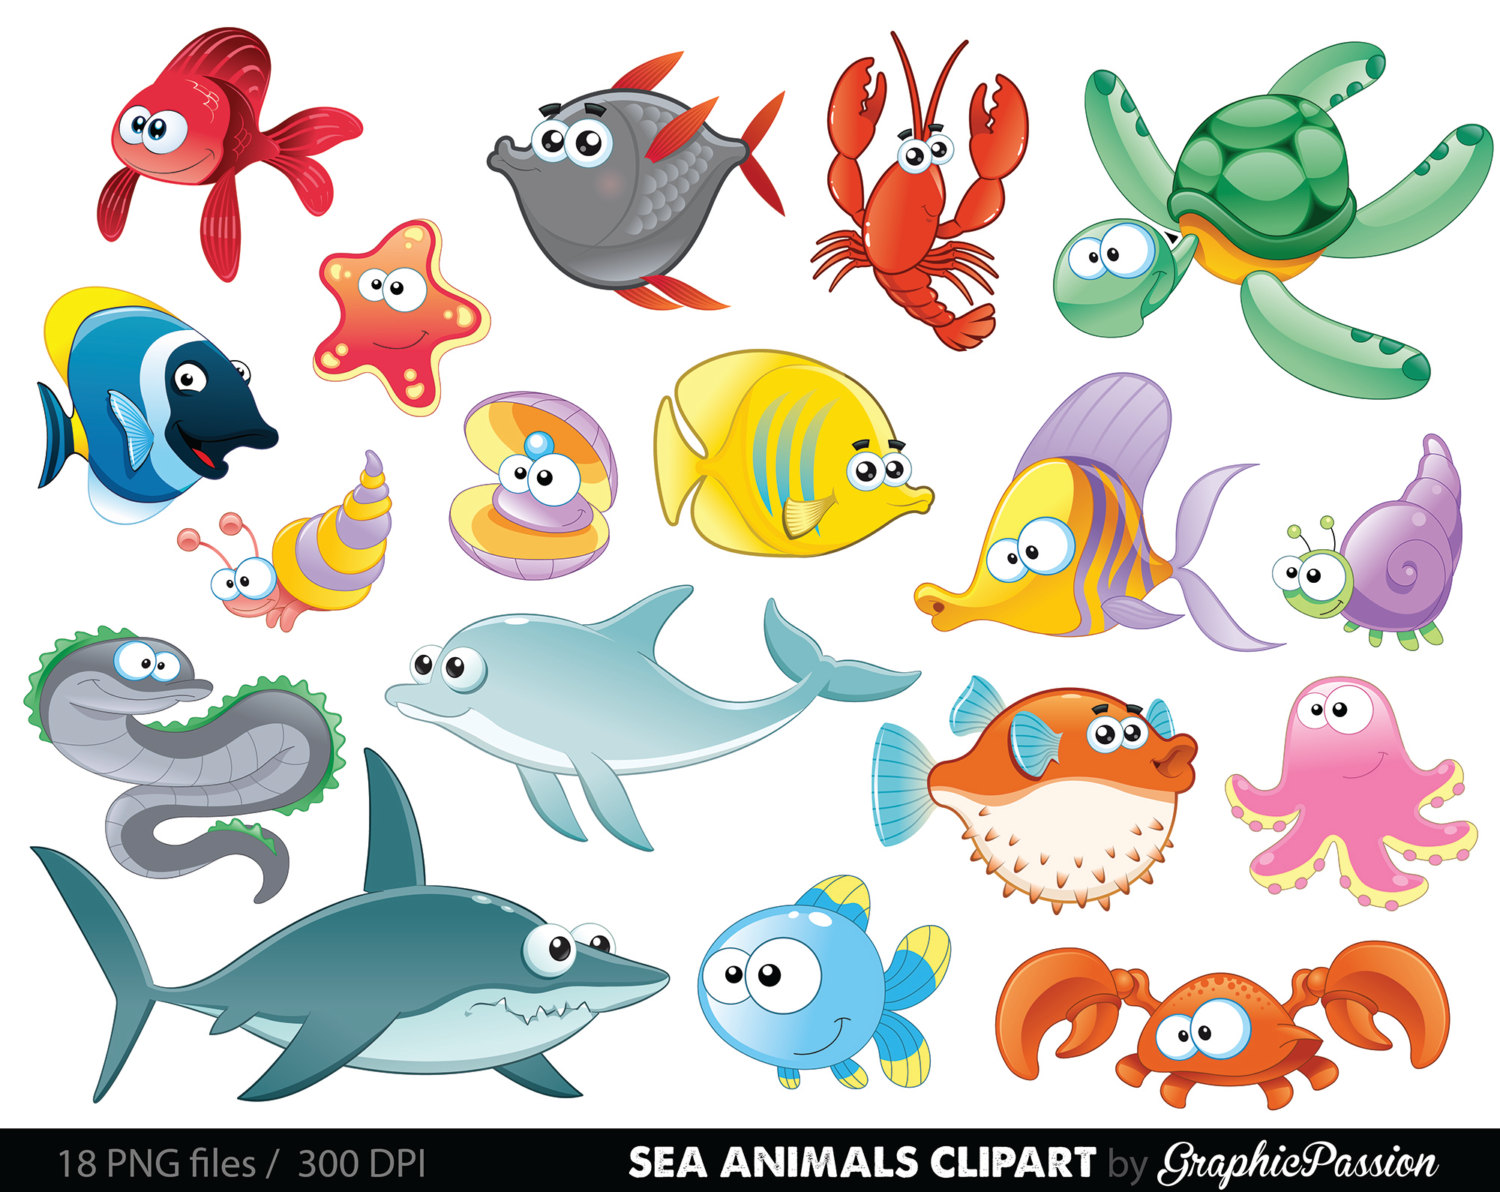 Sea Animal Clipart Under the Sea Baby Sea Creatures Clip Art Animal Clipart Ocean clipart Sea creatures graphics Sea animals vector